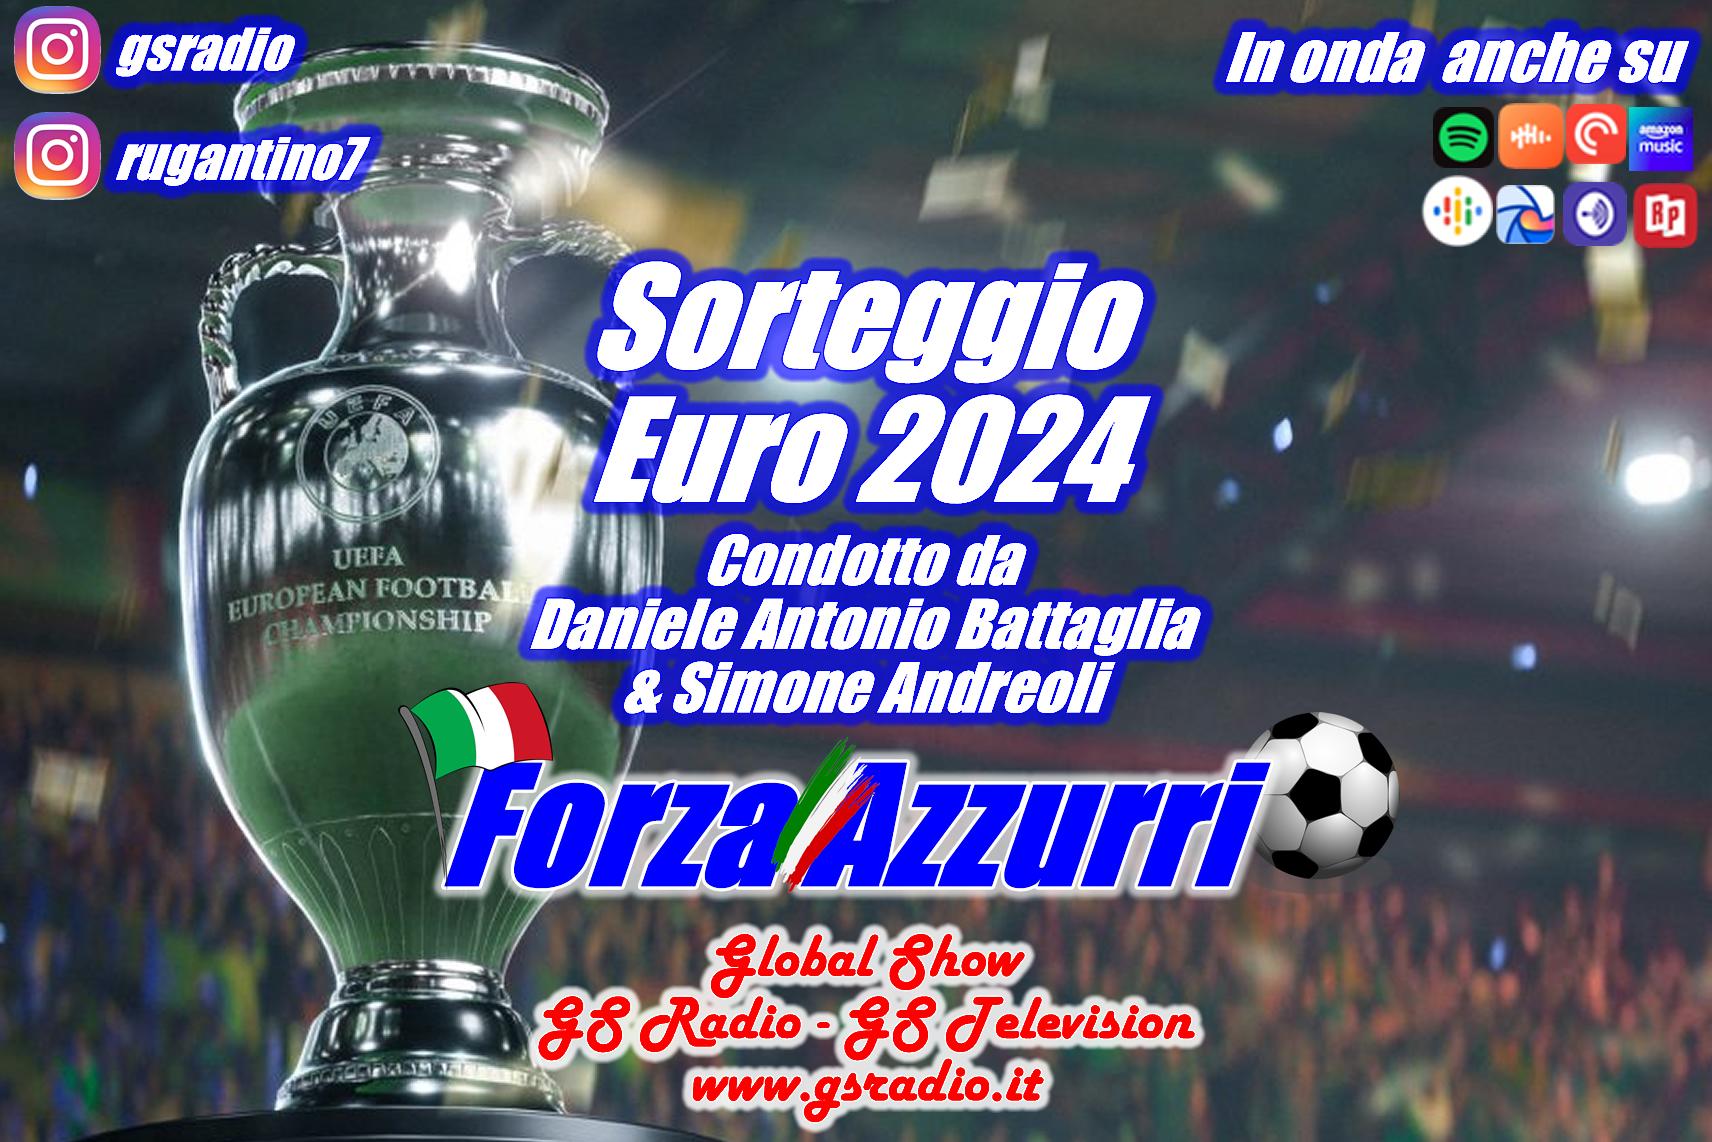 10 - Sorteggio Euro 2024